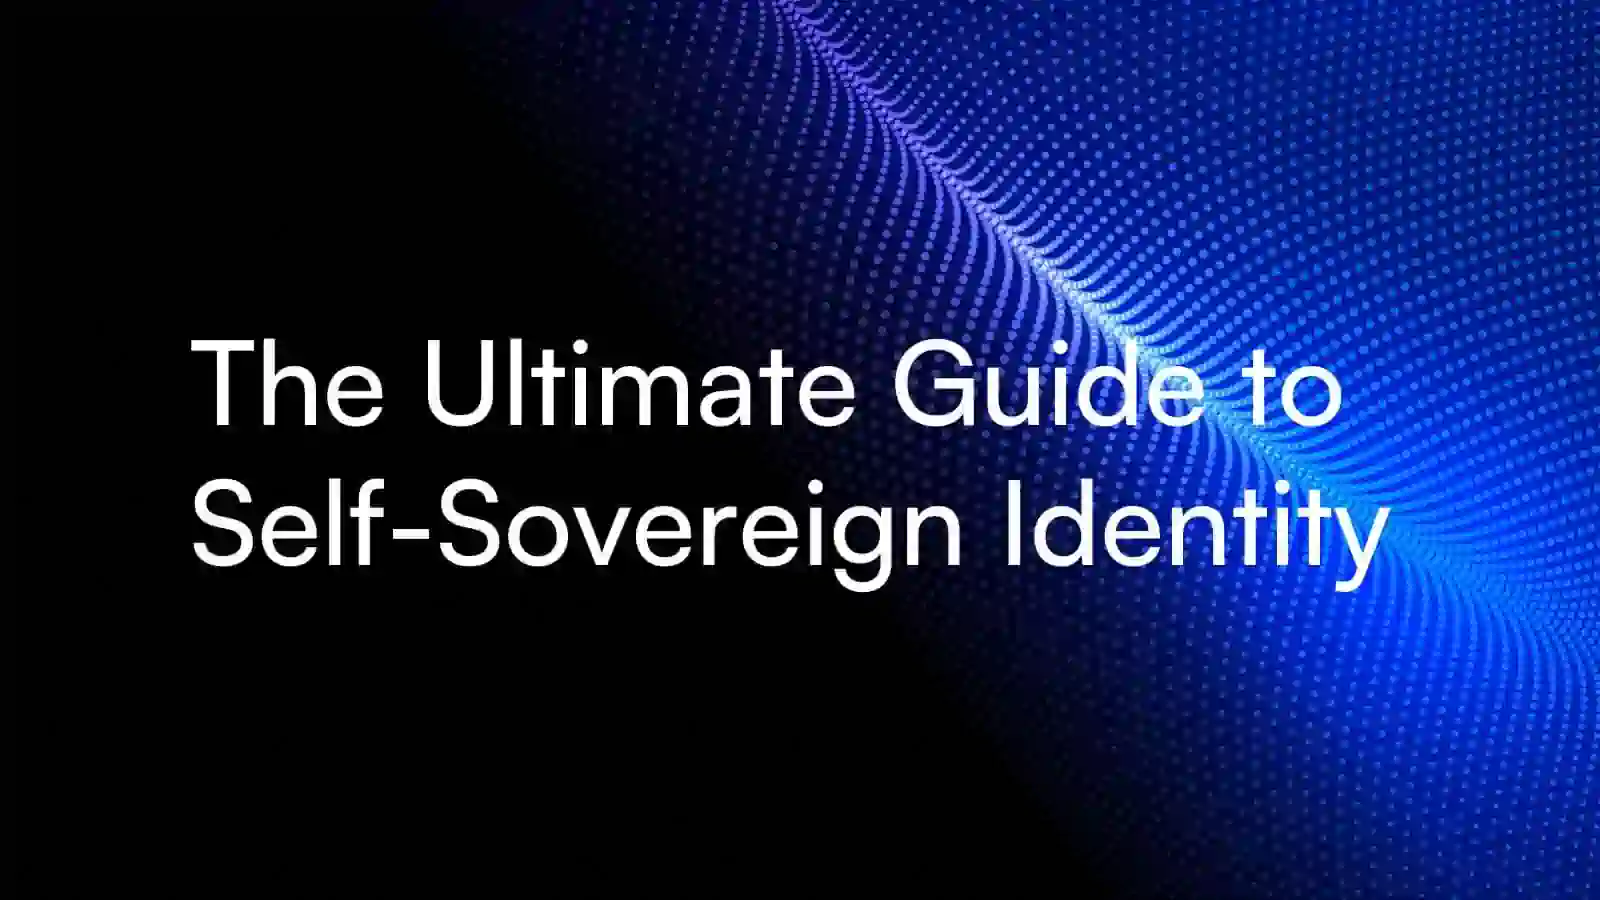 Exklusiv: Galxe will eine erlaubnislose selbstsouveräne Identitätsinfrastruktur einführen